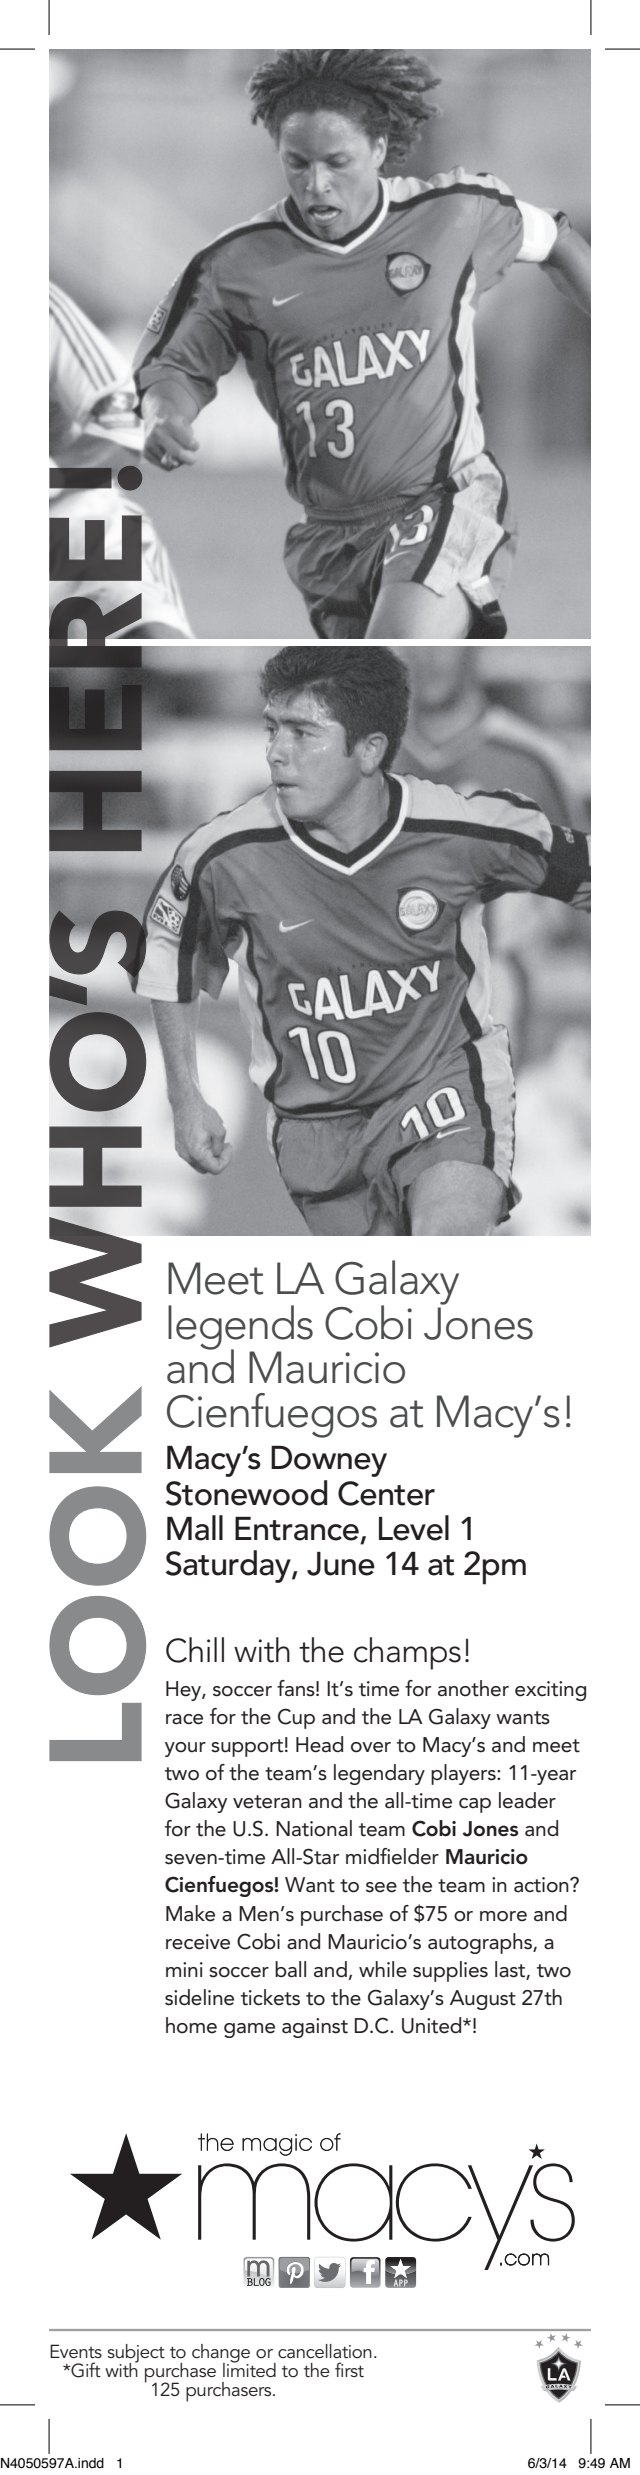 Meet LA Galaxy legend Mauricio Cienfuegos at #GalaxyThrowback